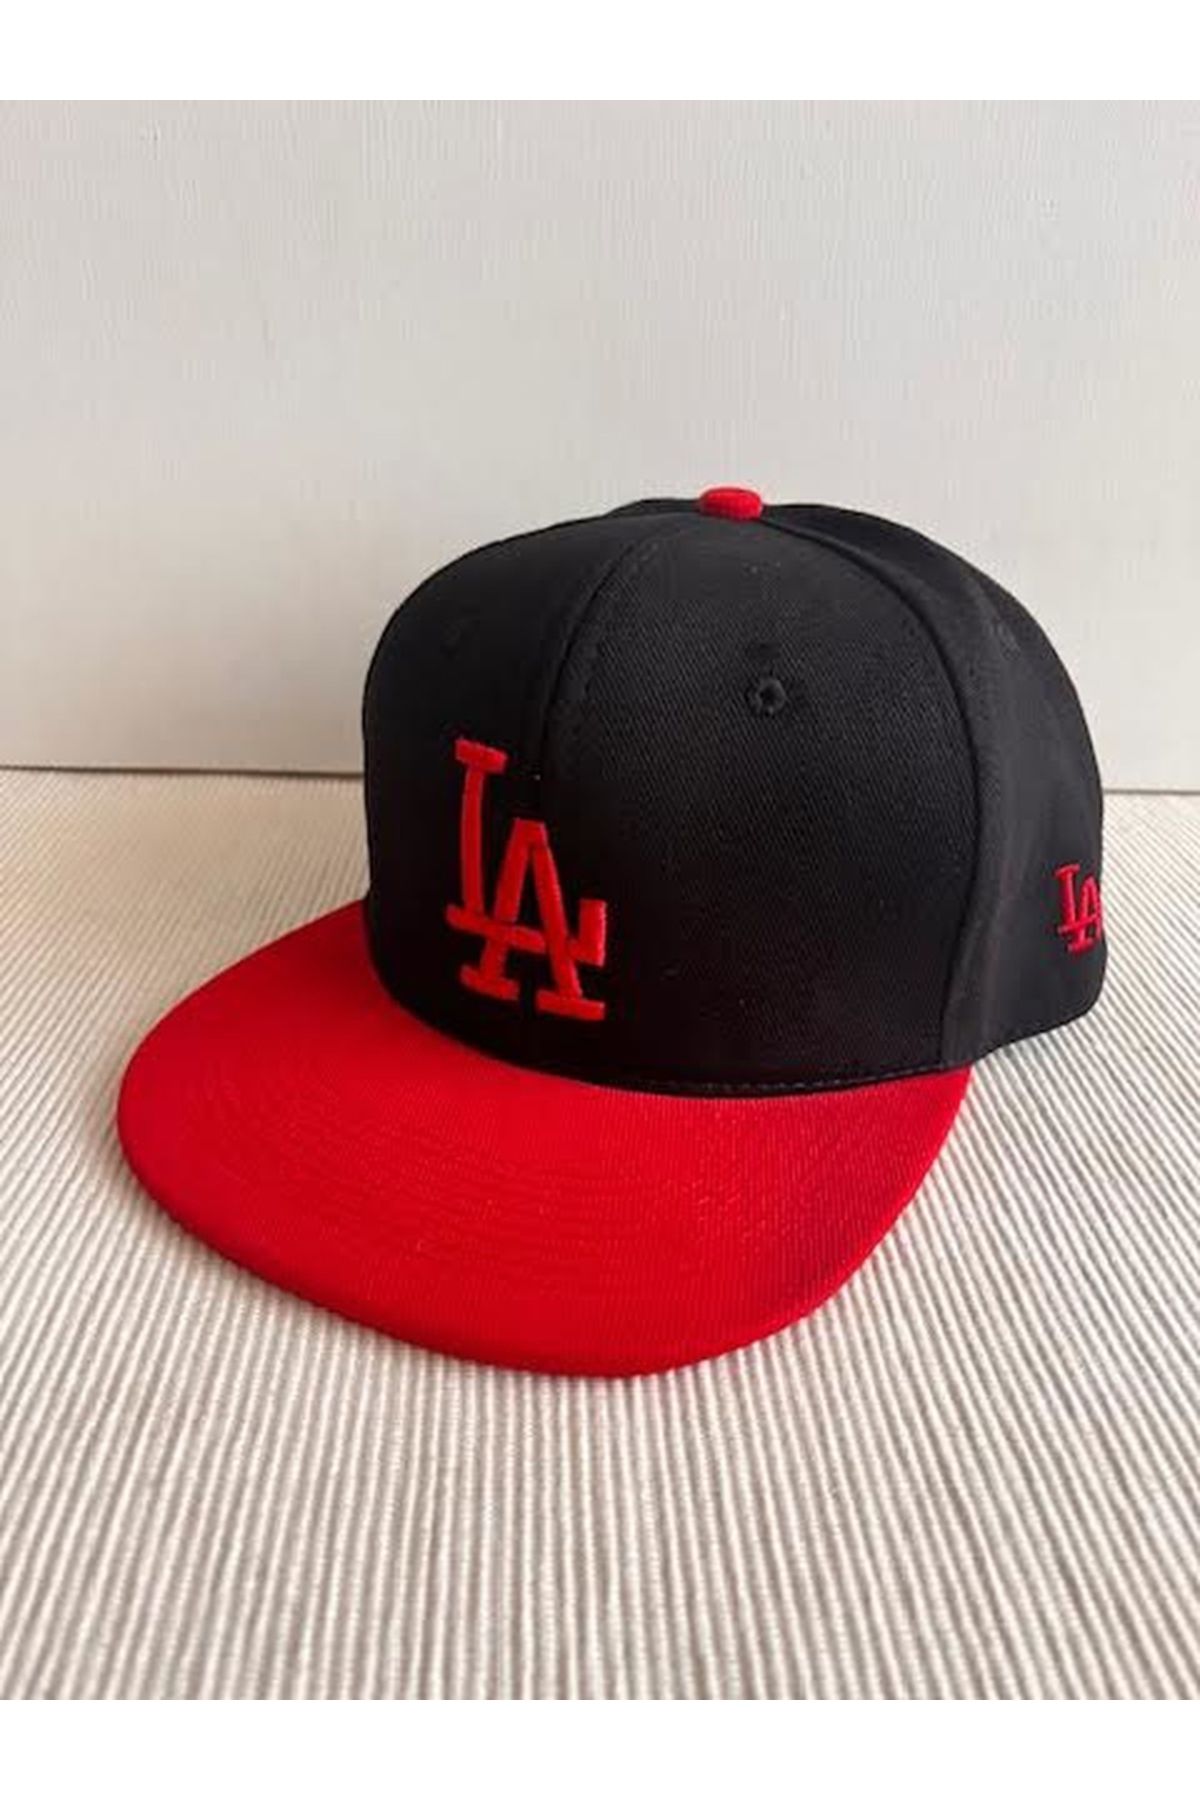 CosmoOutlet La Los Angeles Logolu Arkasından Ayarlanabilir Unisex Kırmızı Siyah Hip Hop Şapka